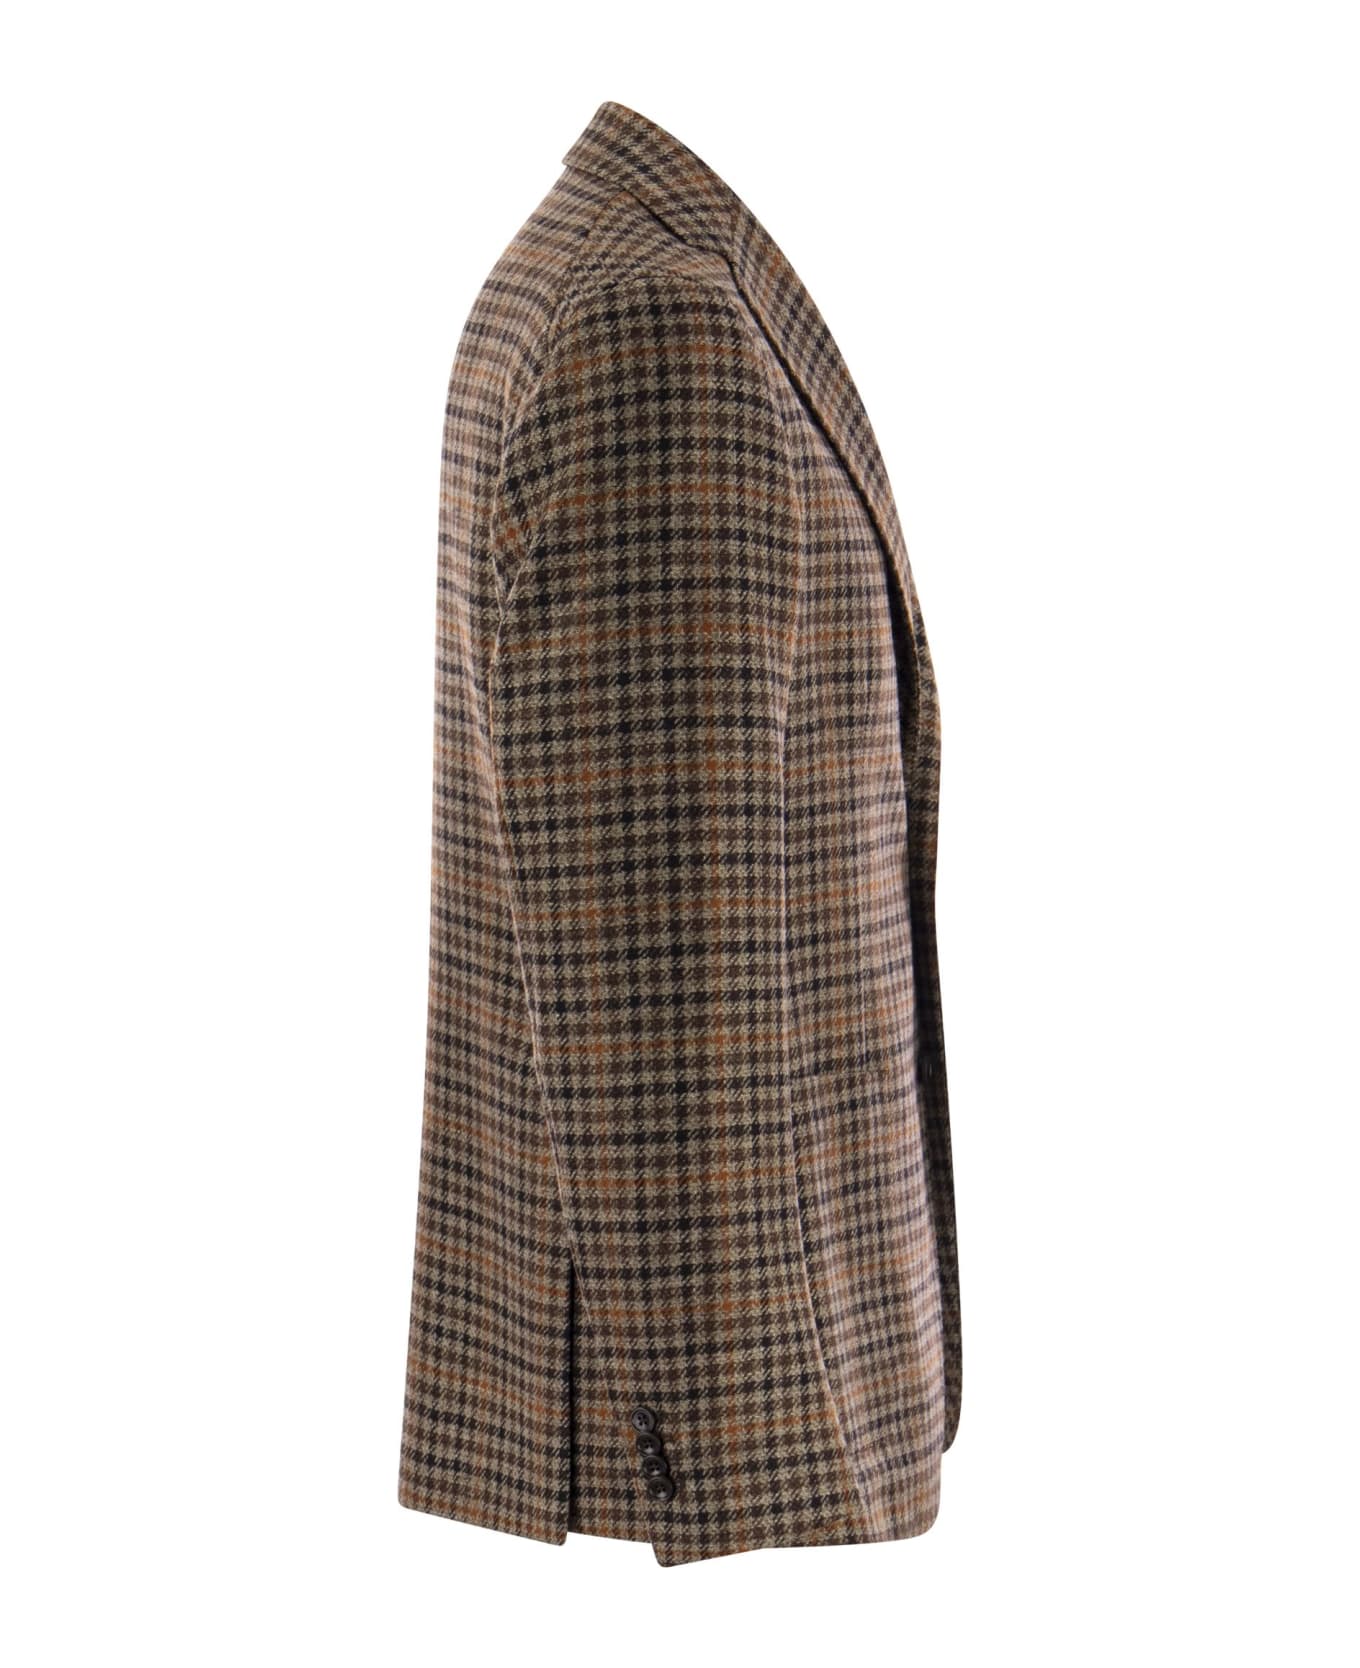 Tagliatore Montecarlo - Wool And Cashmere Checked Blazer - Brown スーツ